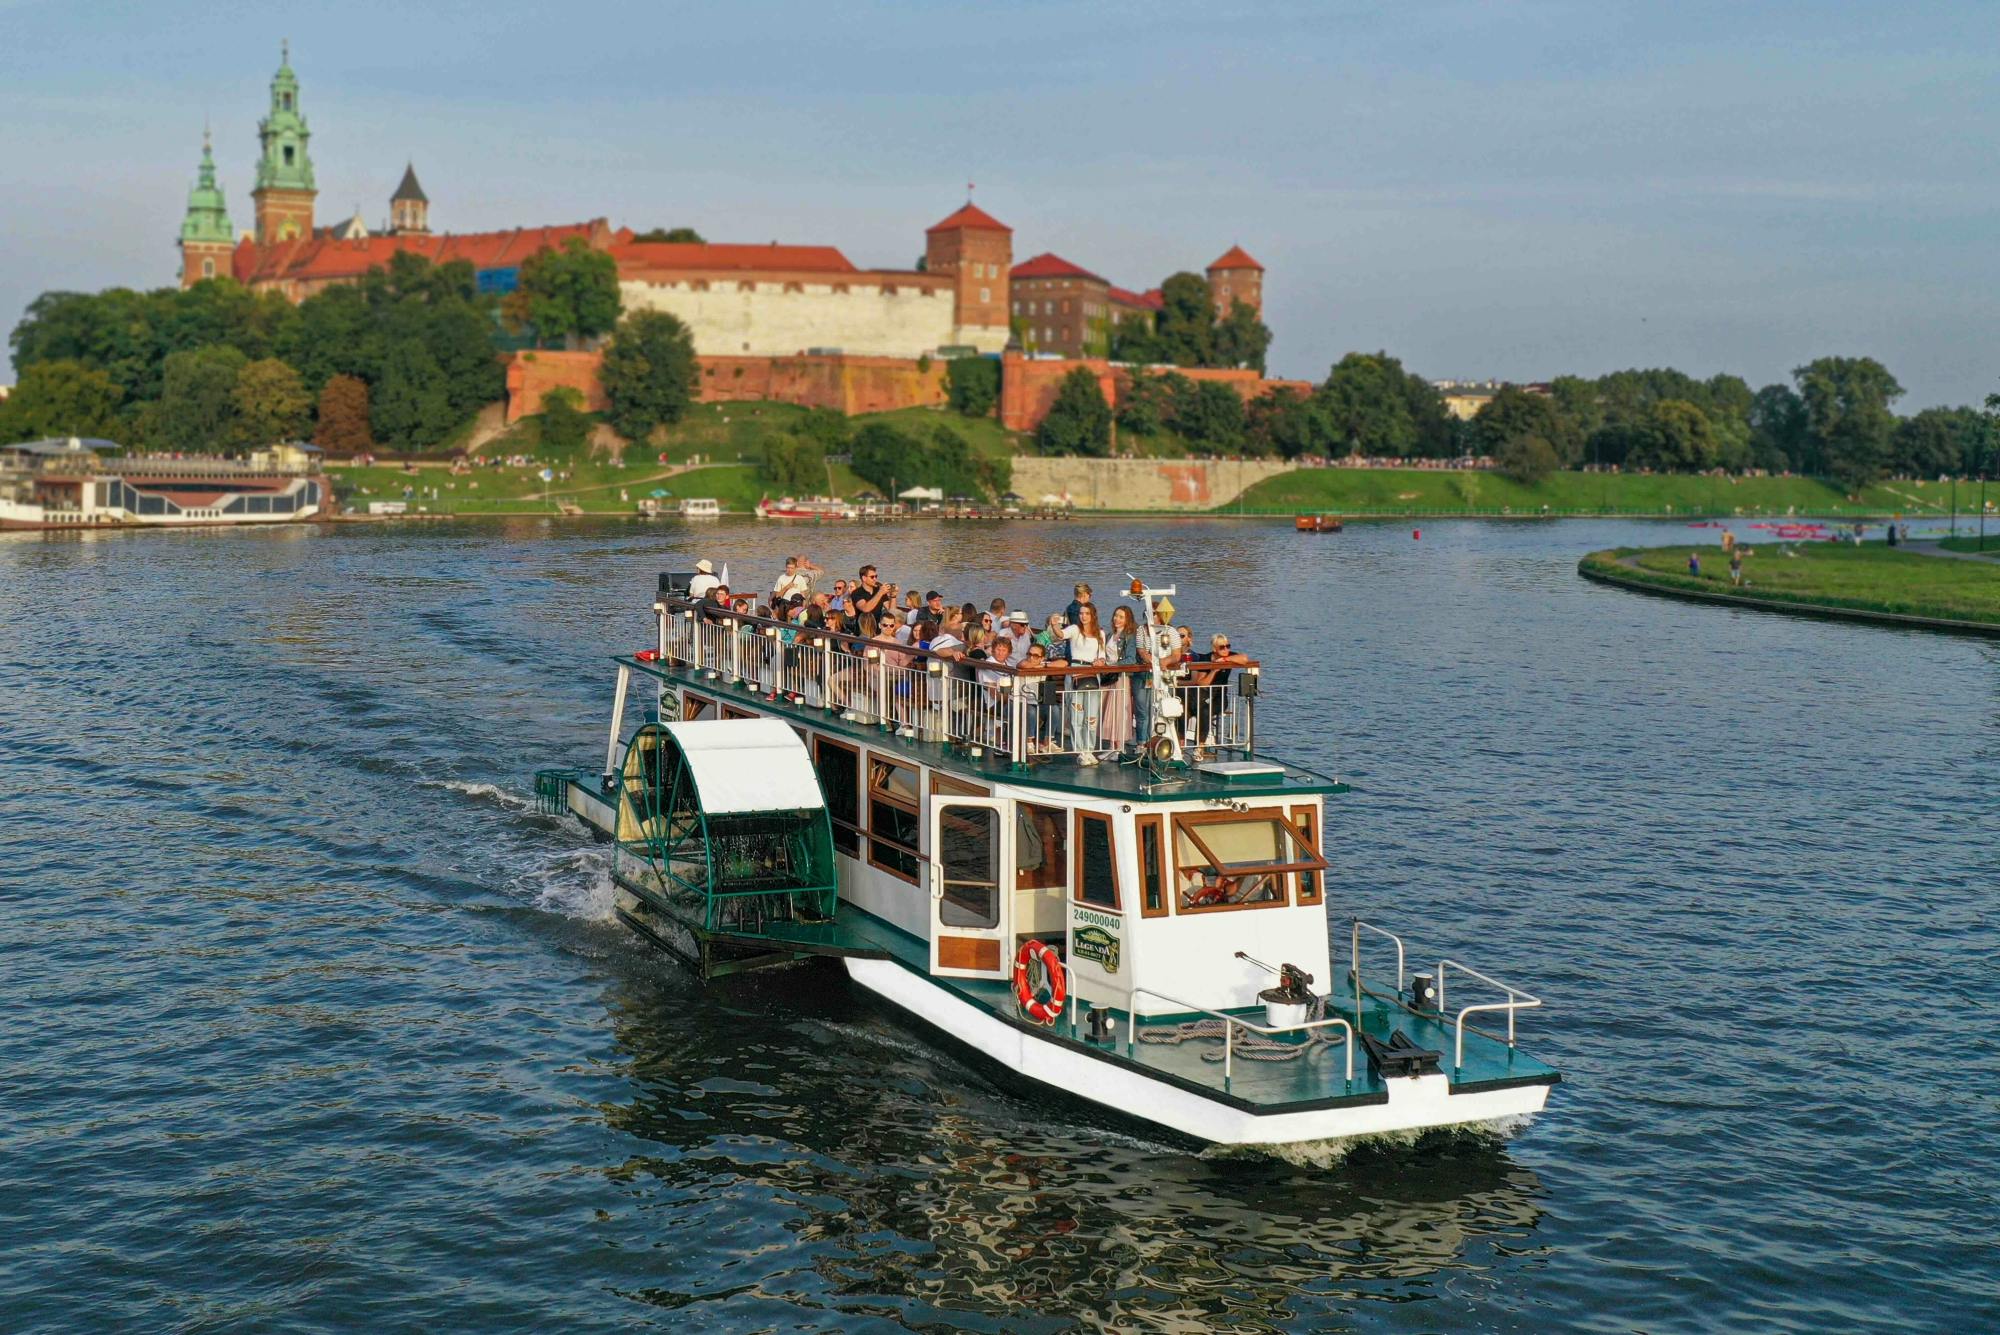 Sightseeing cruise on the Vistula river in Krakow